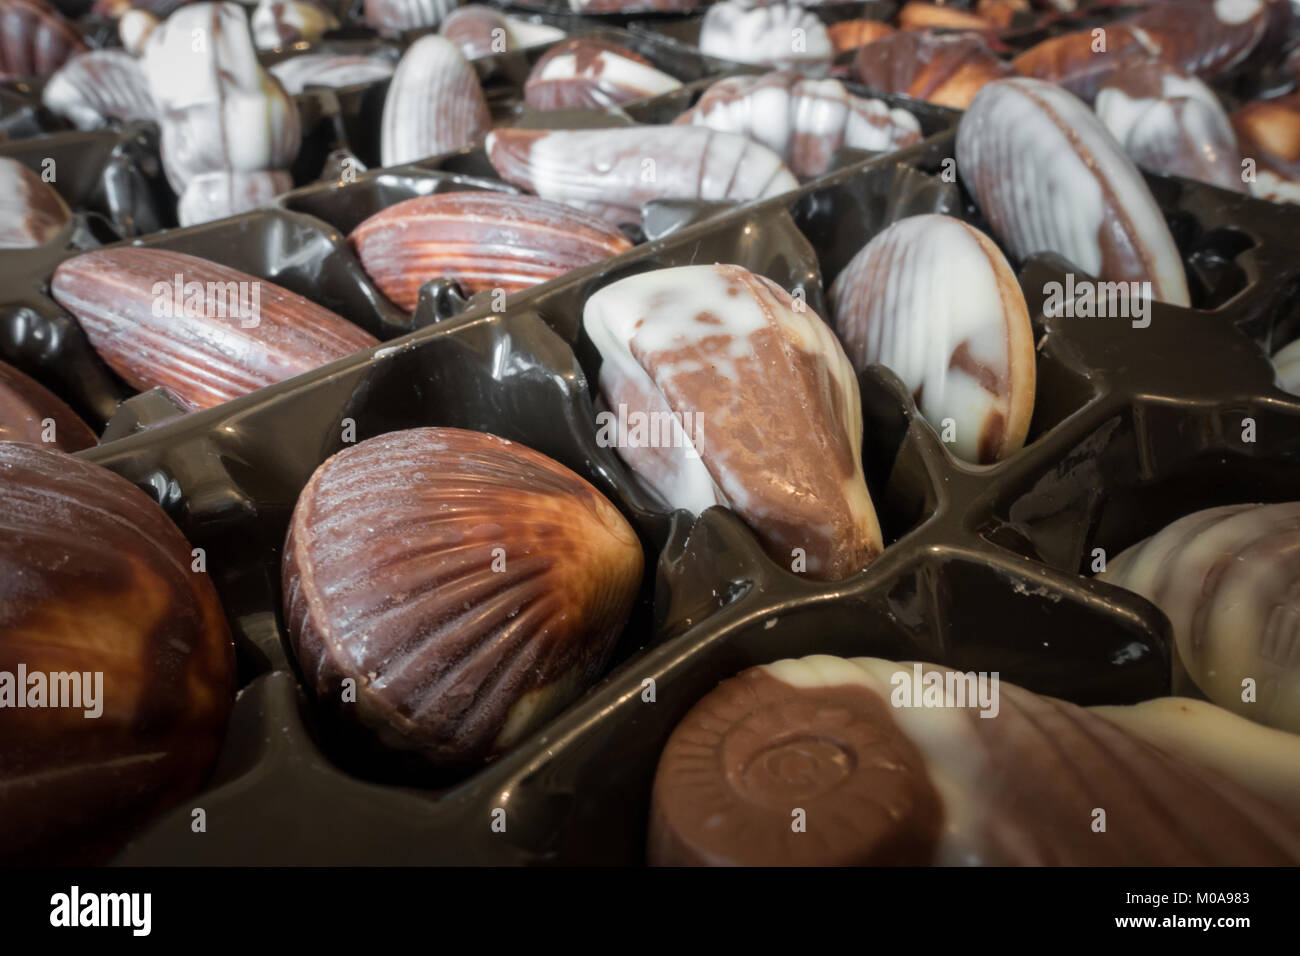 Guylian Belgio Tartufo al cioccolato gusci nel loro imballaggio. Foto Stock